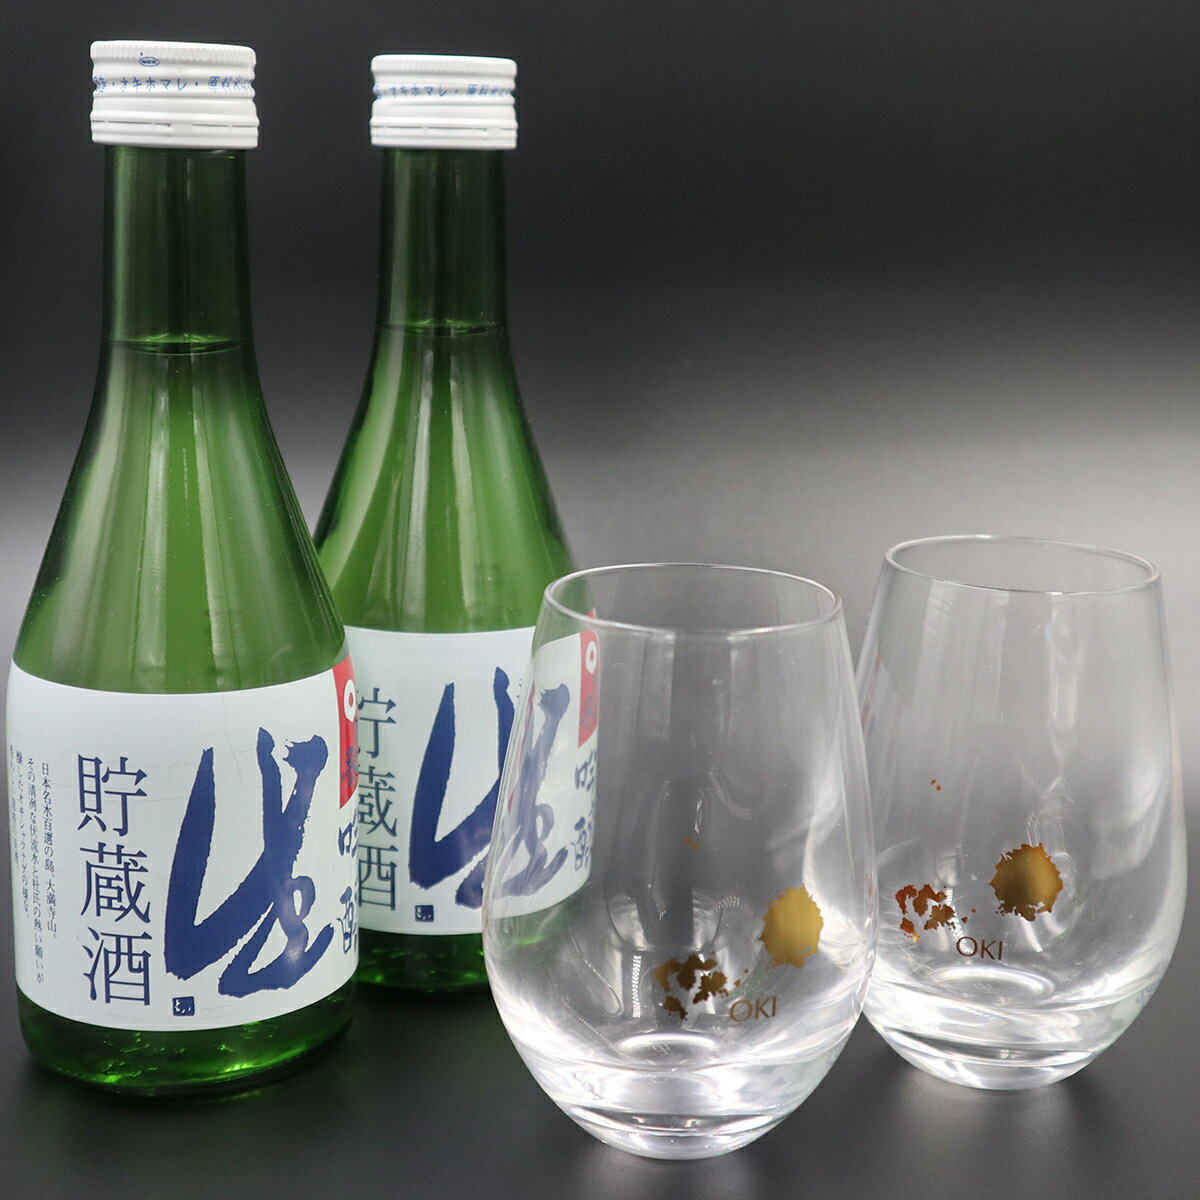 隠岐誉 日本酒 吟醸 生貯蔵酒 300ml タンブラー oki 冷酒 セット